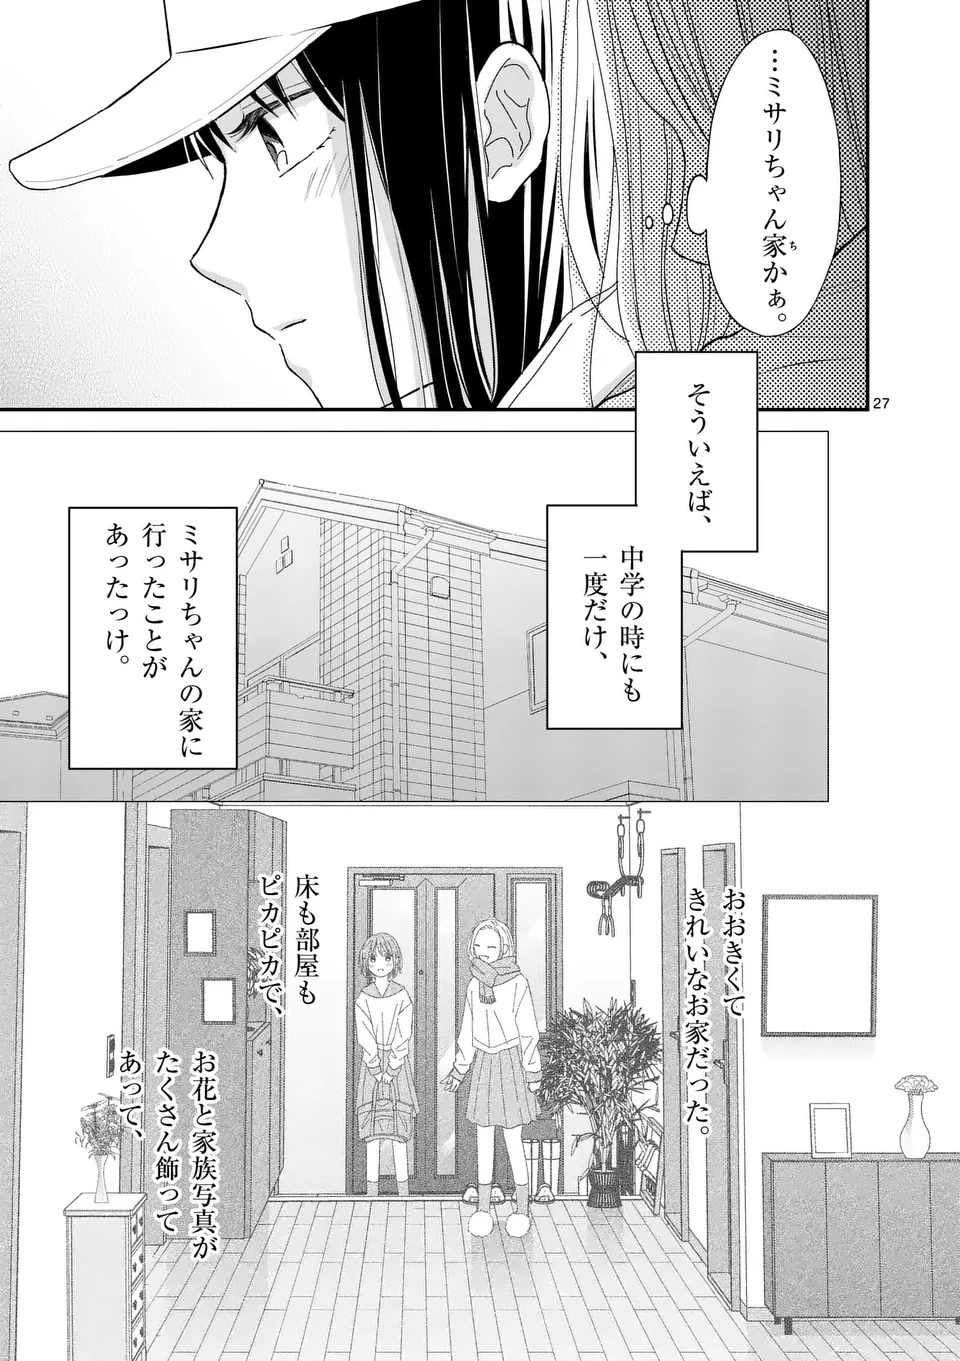 Atashi wo Ijimeta Kanojo no Ko - Chapter 3.2 - Page 13